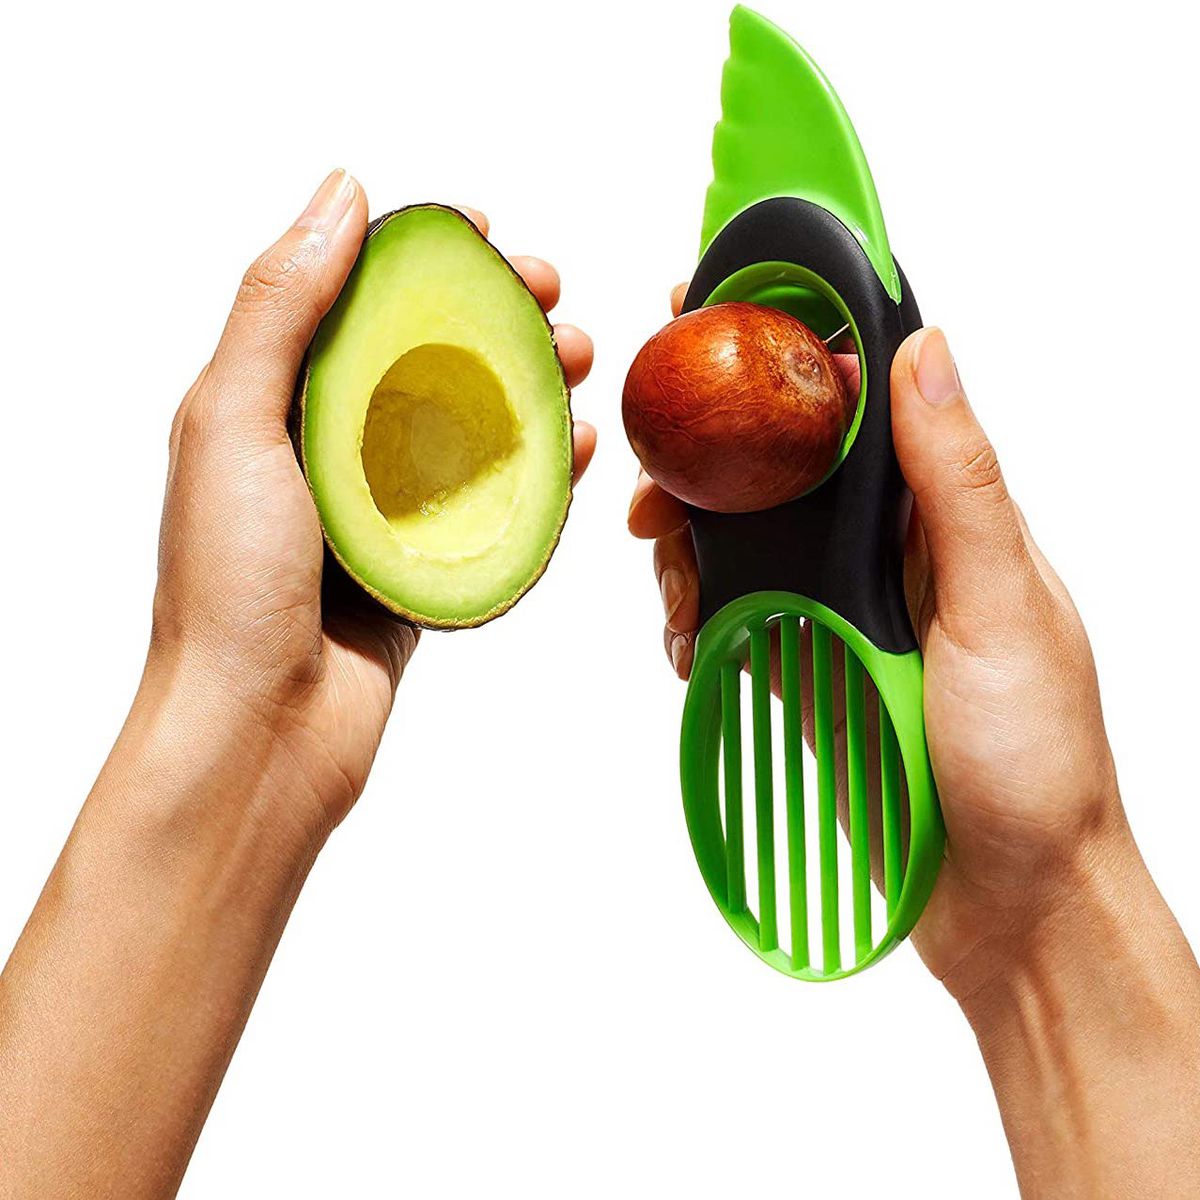 An avocado and an avocado slicer 